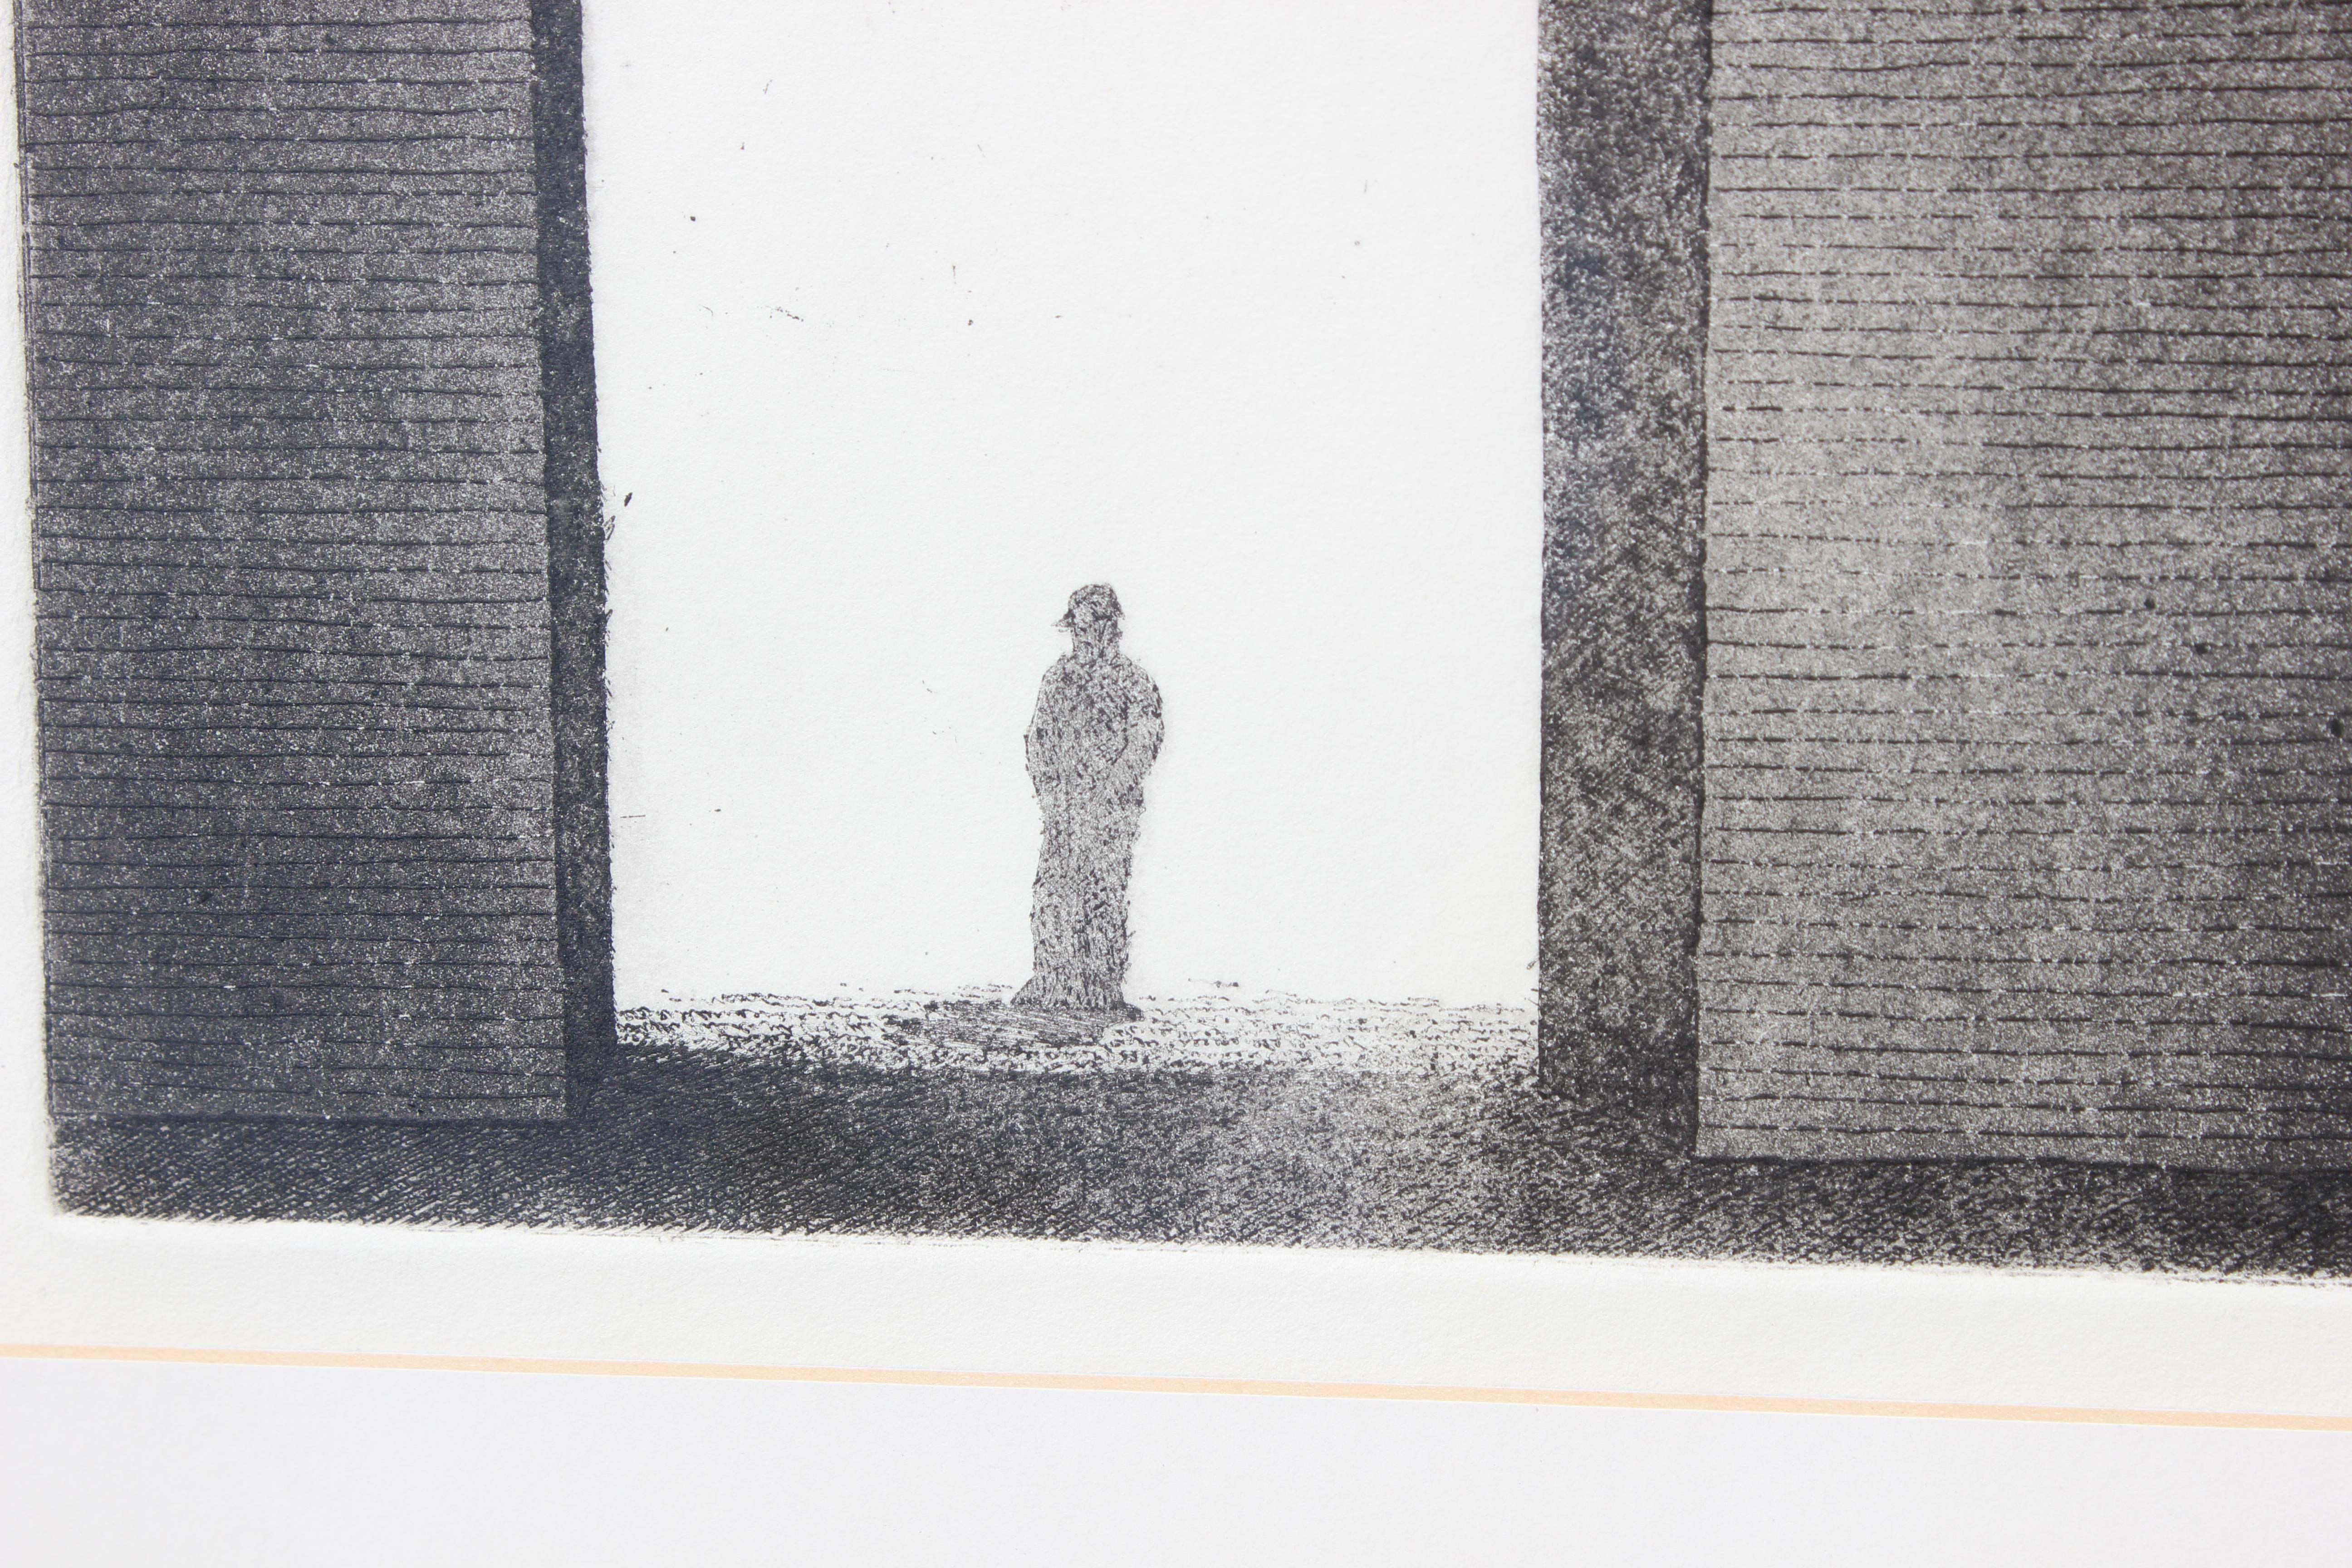 Man in Doorway Sketch - Art by Garth Daniels